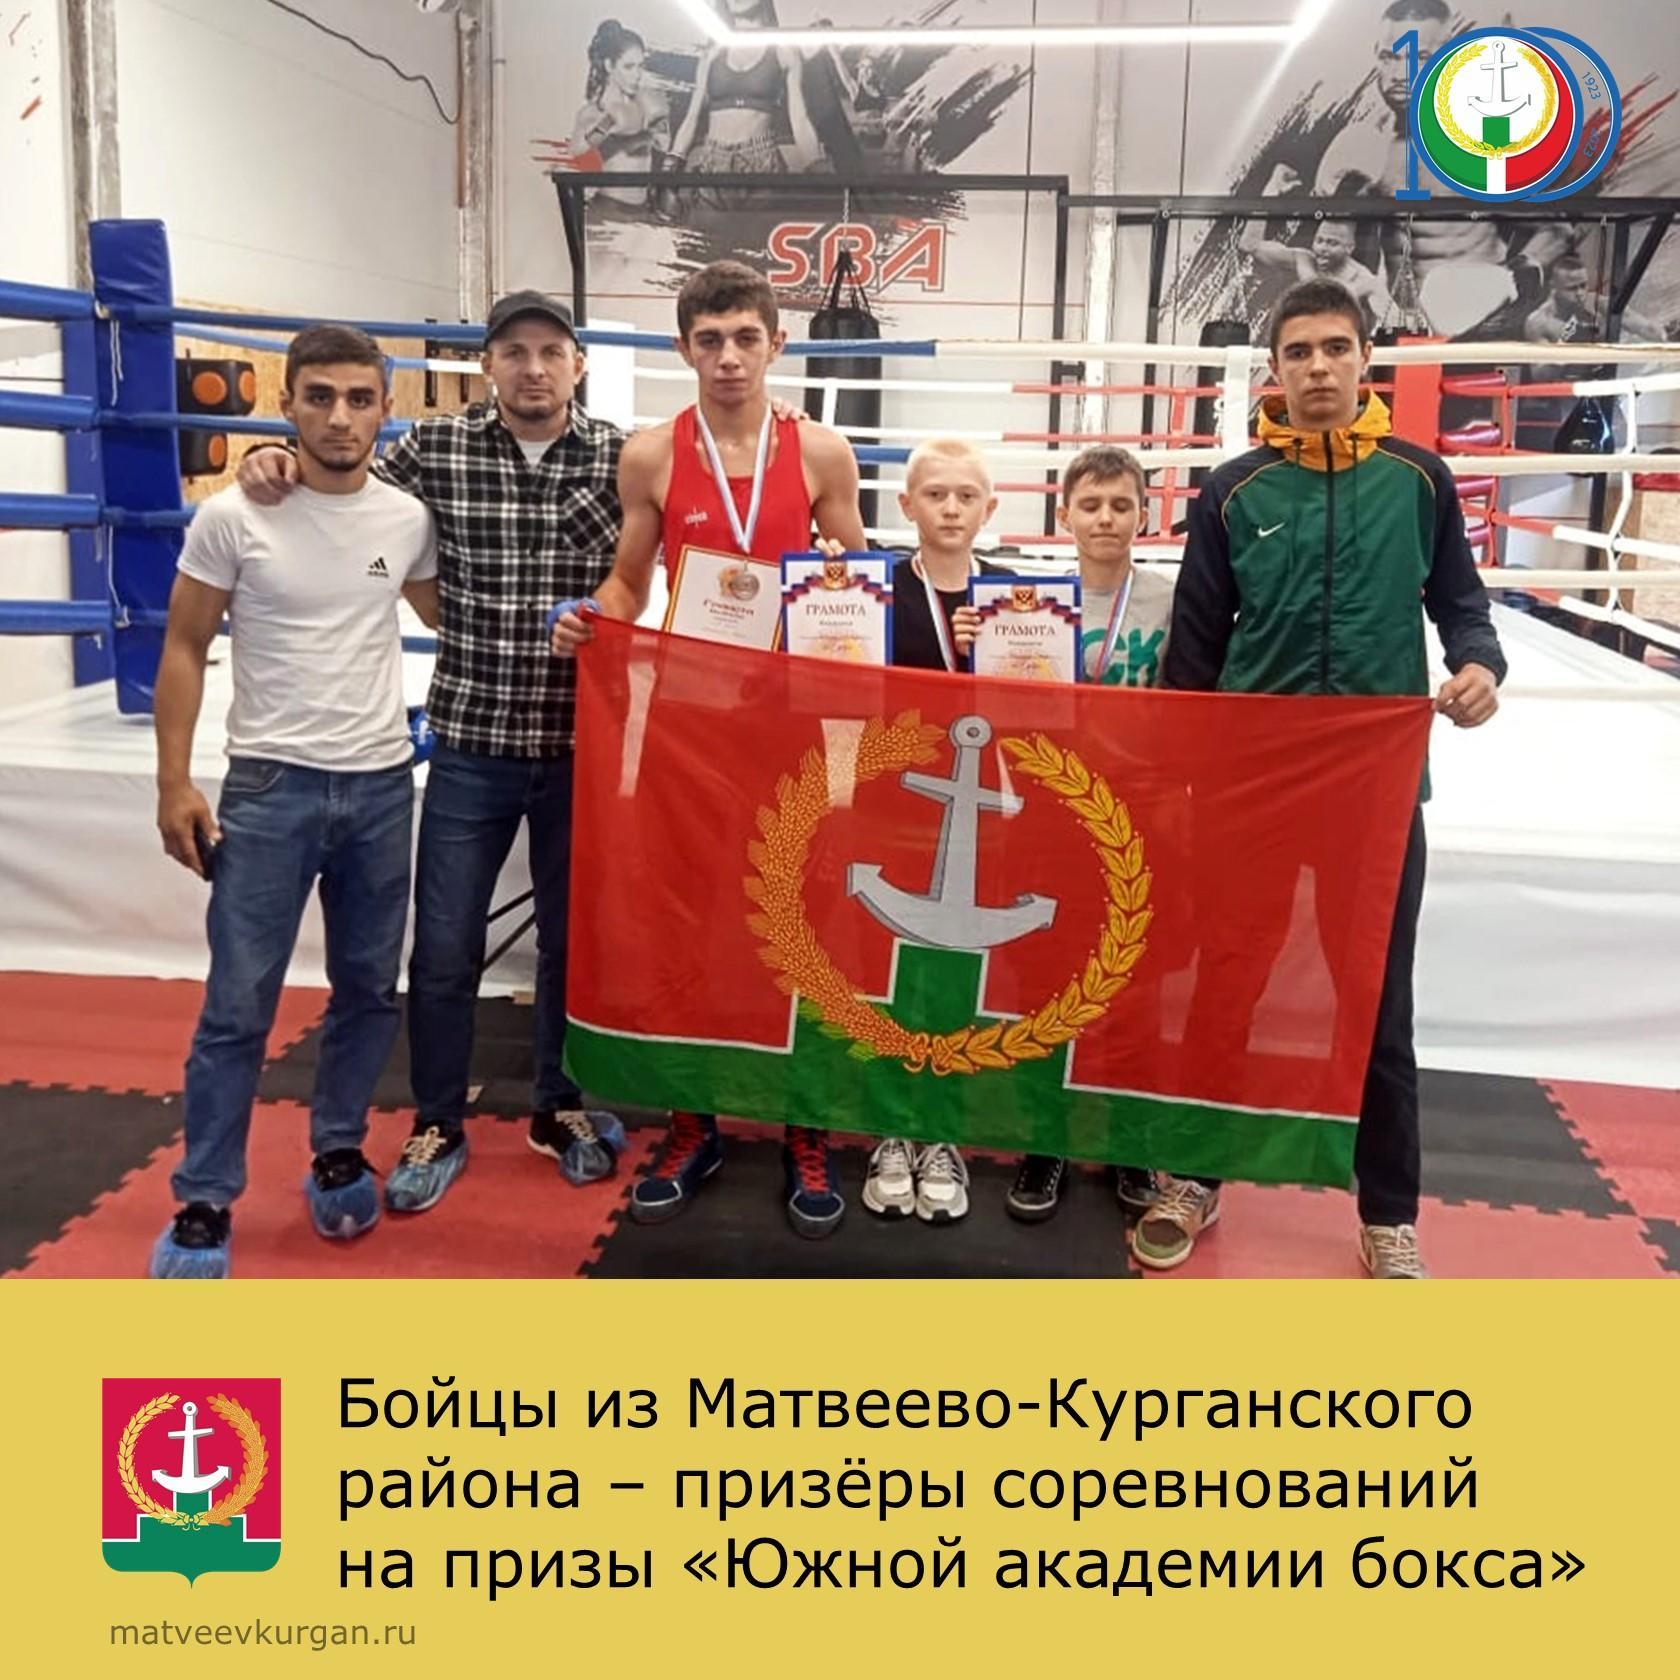 Матвеево-Курганские спортсмены — призеры соревнований «Южной академии бокса»